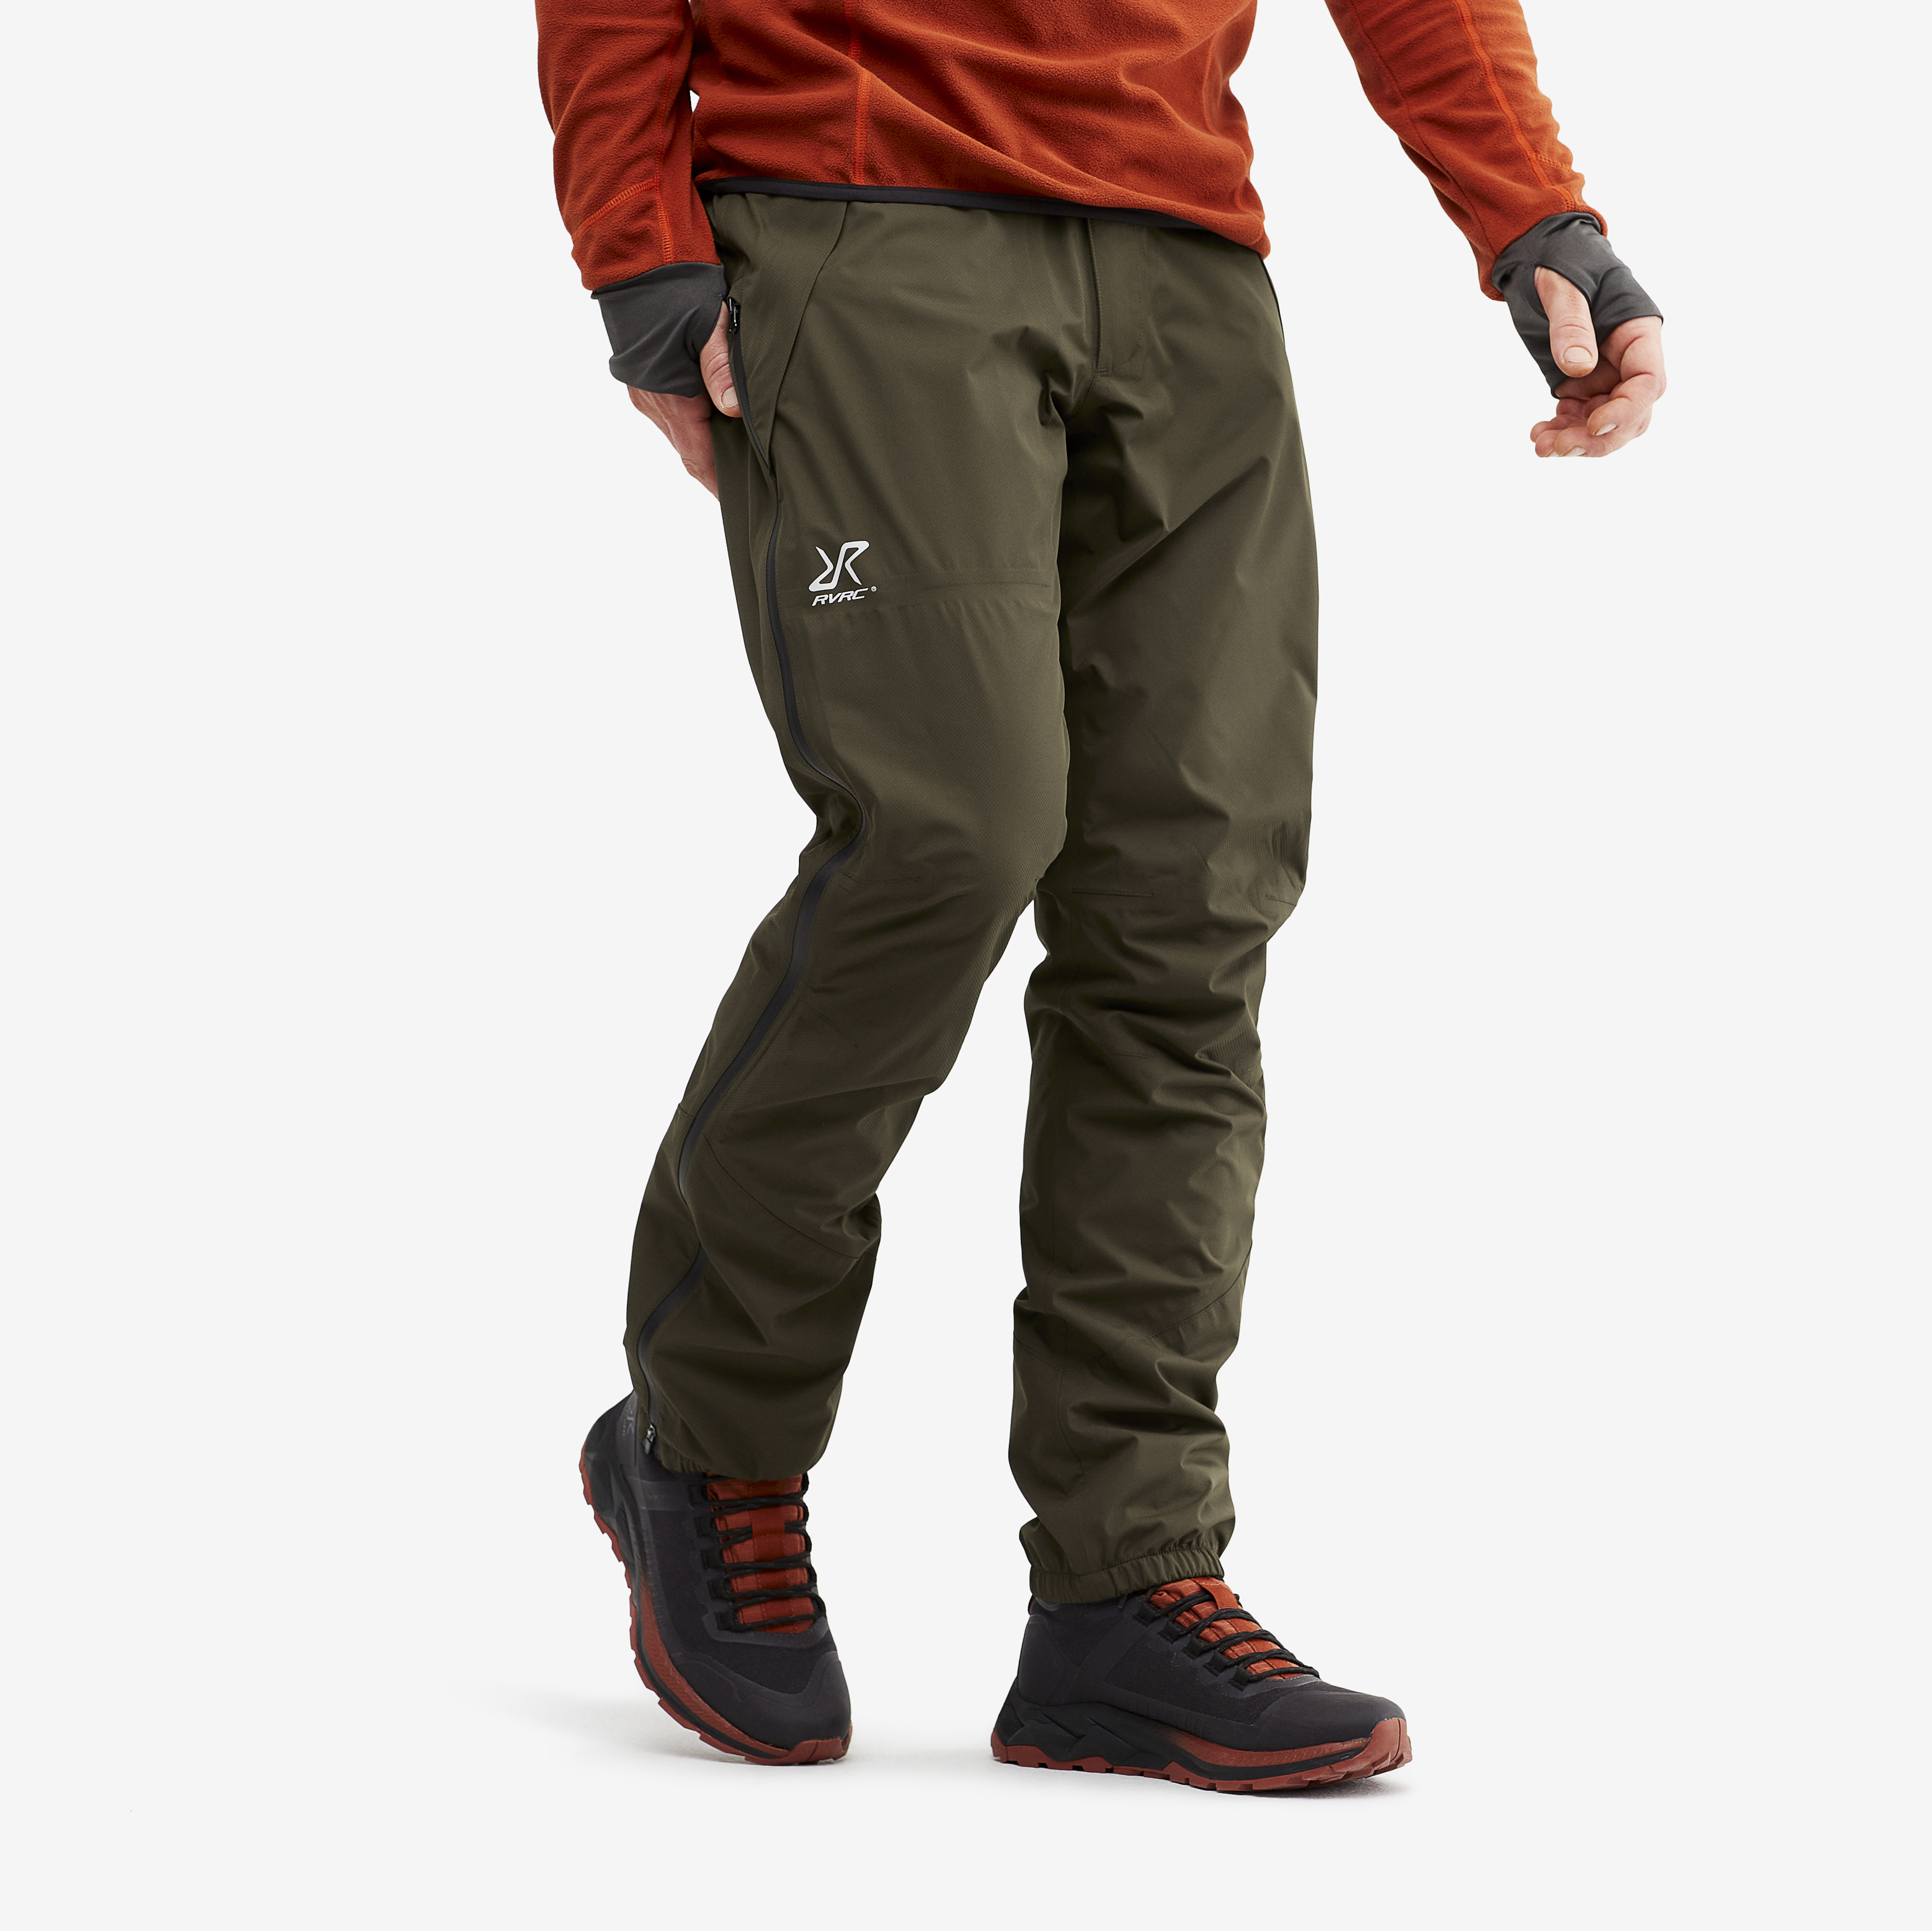 Typhoon nepromokavé kalhoty pro muže v tmavozelené barvě